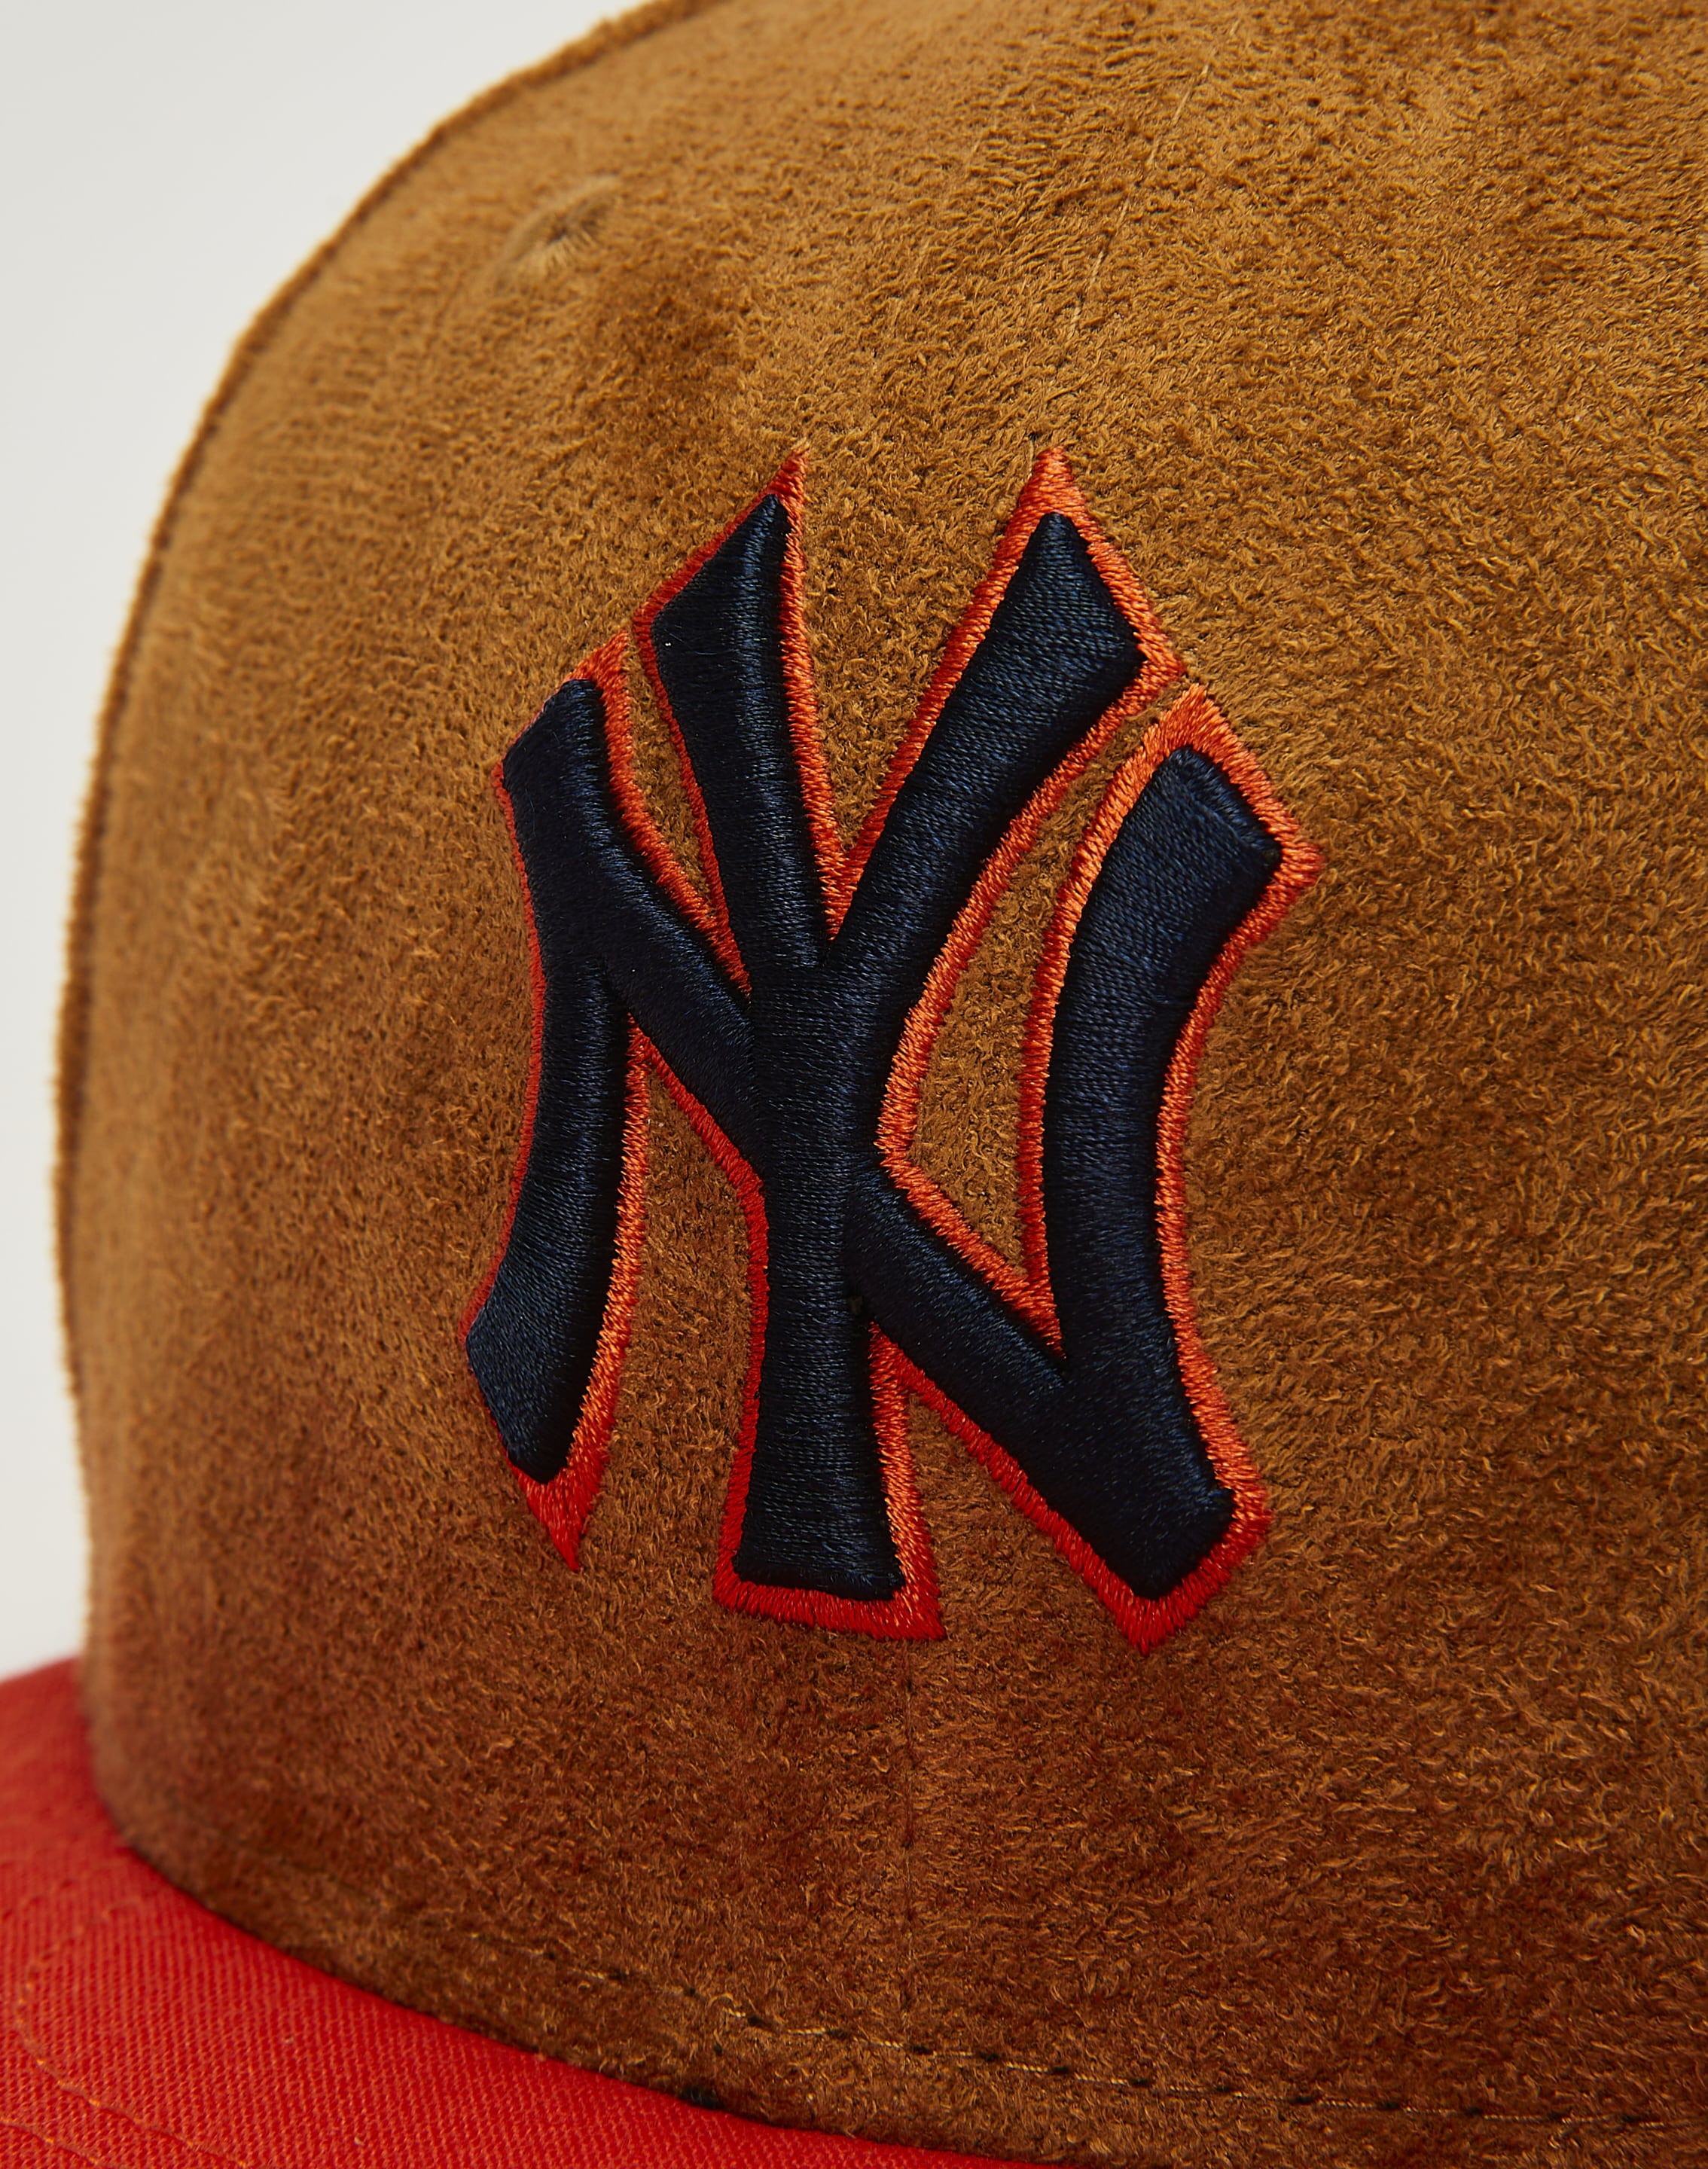 Big Size New York Yankees Cap